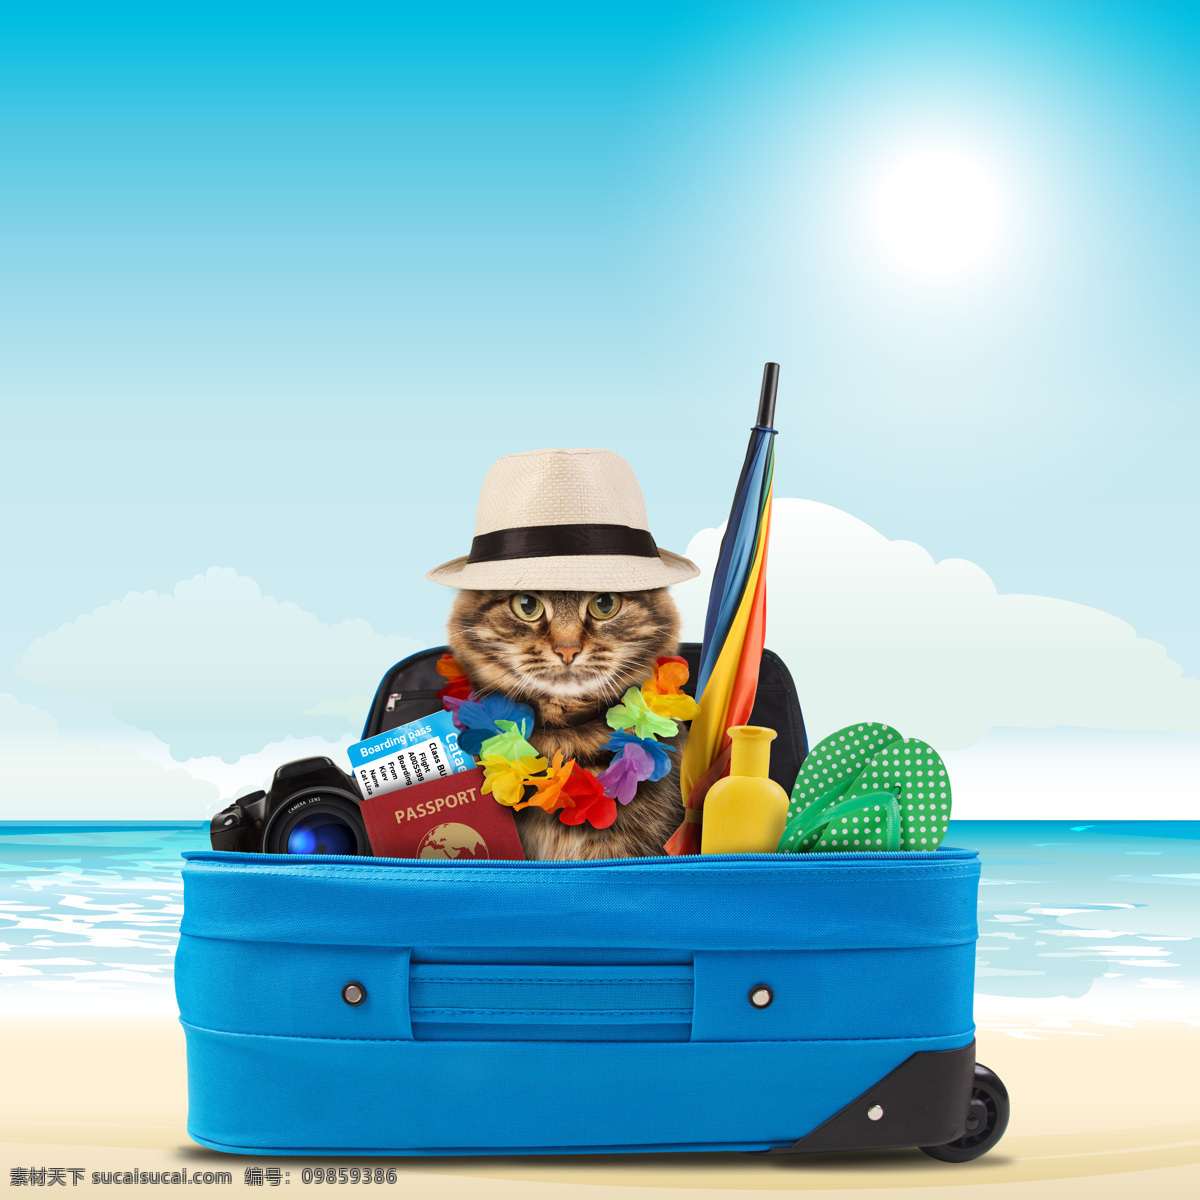 出国旅游 小猫 大海 海边 旅游箱 猫咪 宠物 猫科动物 野生动物 动物世界 陆地动物 生物世界 青色 天蓝色